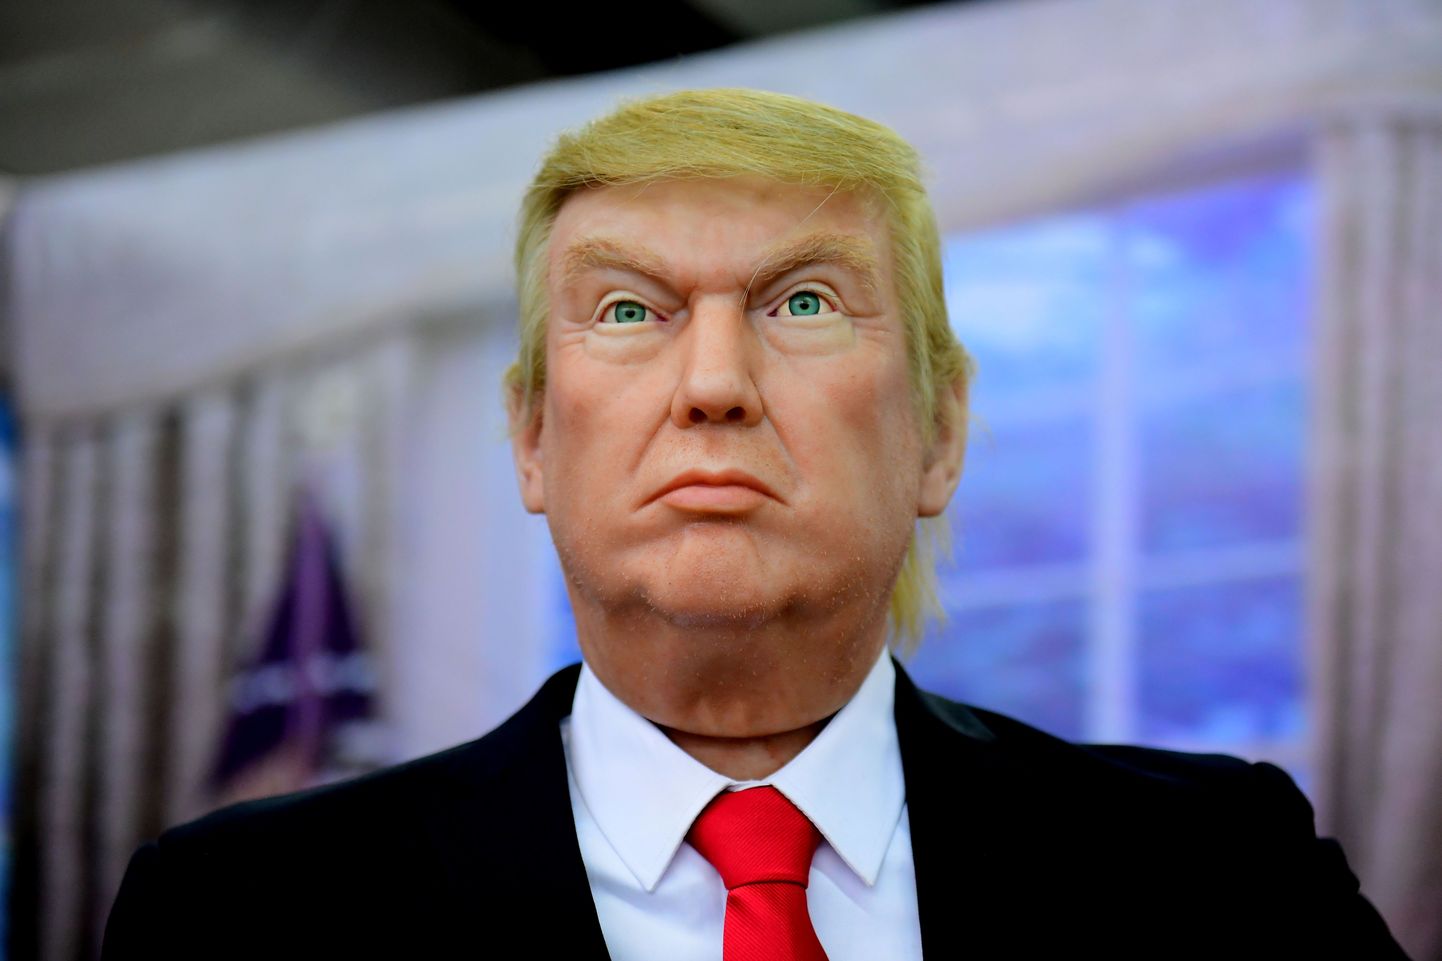 Donald Trumpi kuju vahakujude muuseumis Shenyangis.